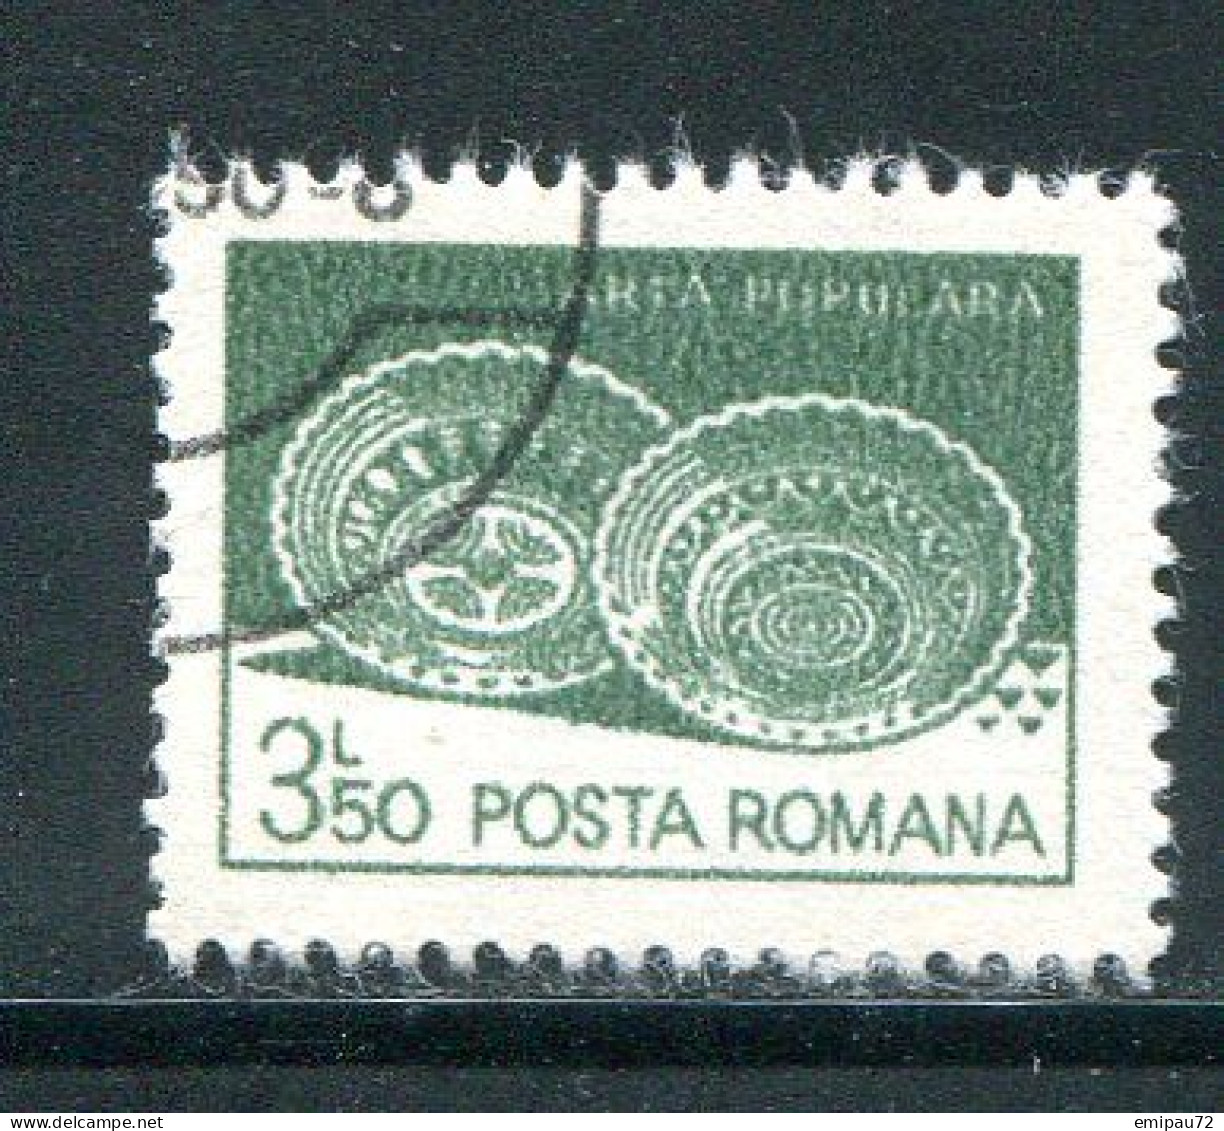 ROUMANIE- Y&T N°3423- Oblitéré - Used Stamps